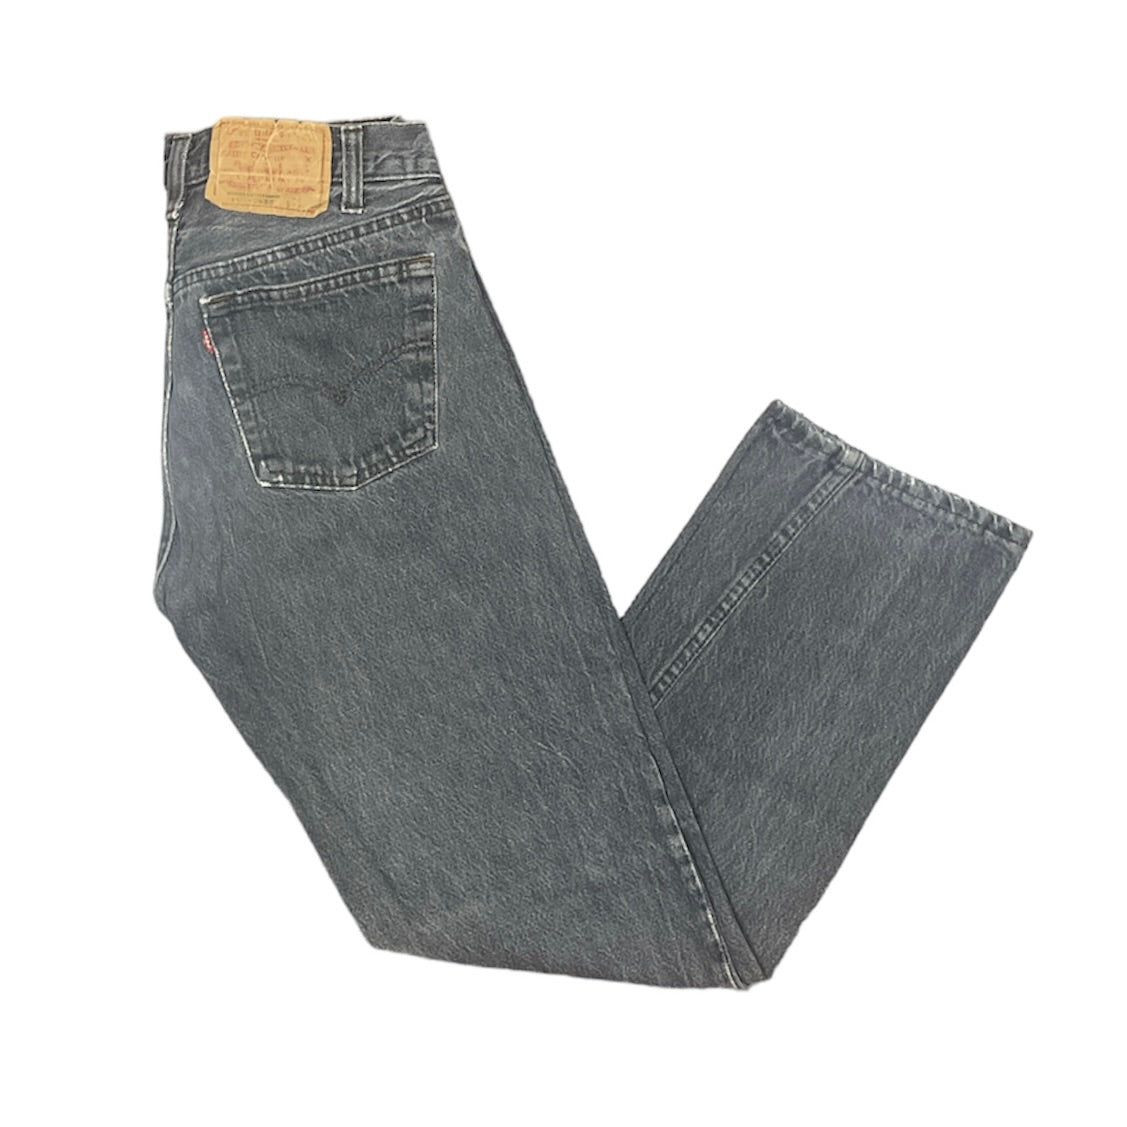 Vintage Levis 501 Grey Jeans (W29/L30)